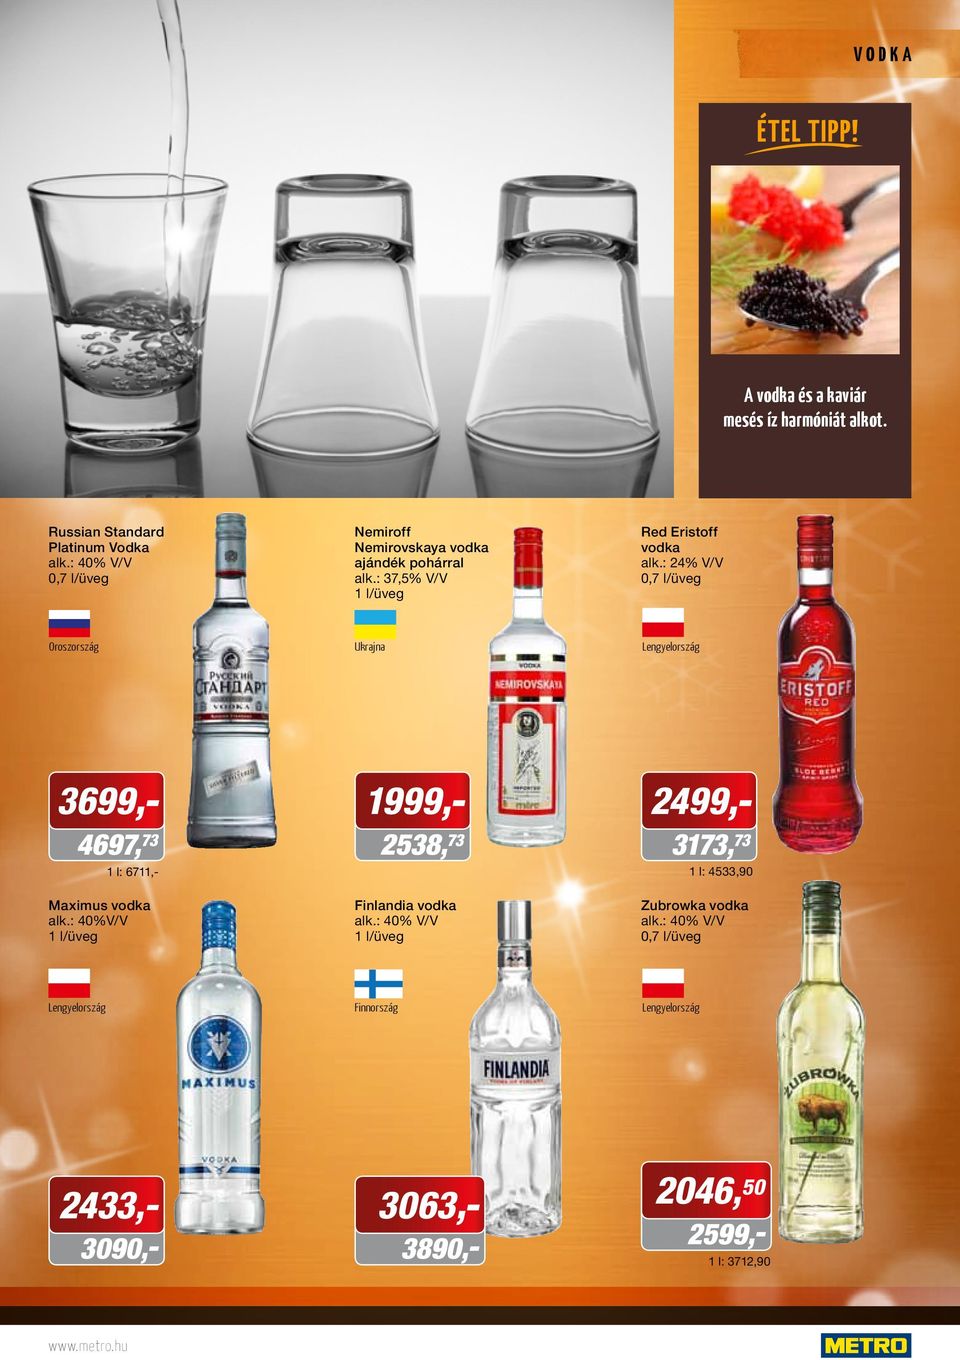 : 24% V/V Oroszország Ukrajna Lengyelország 3699,- 4697, 73 1 l: 6711,- Maximus vodka alk.